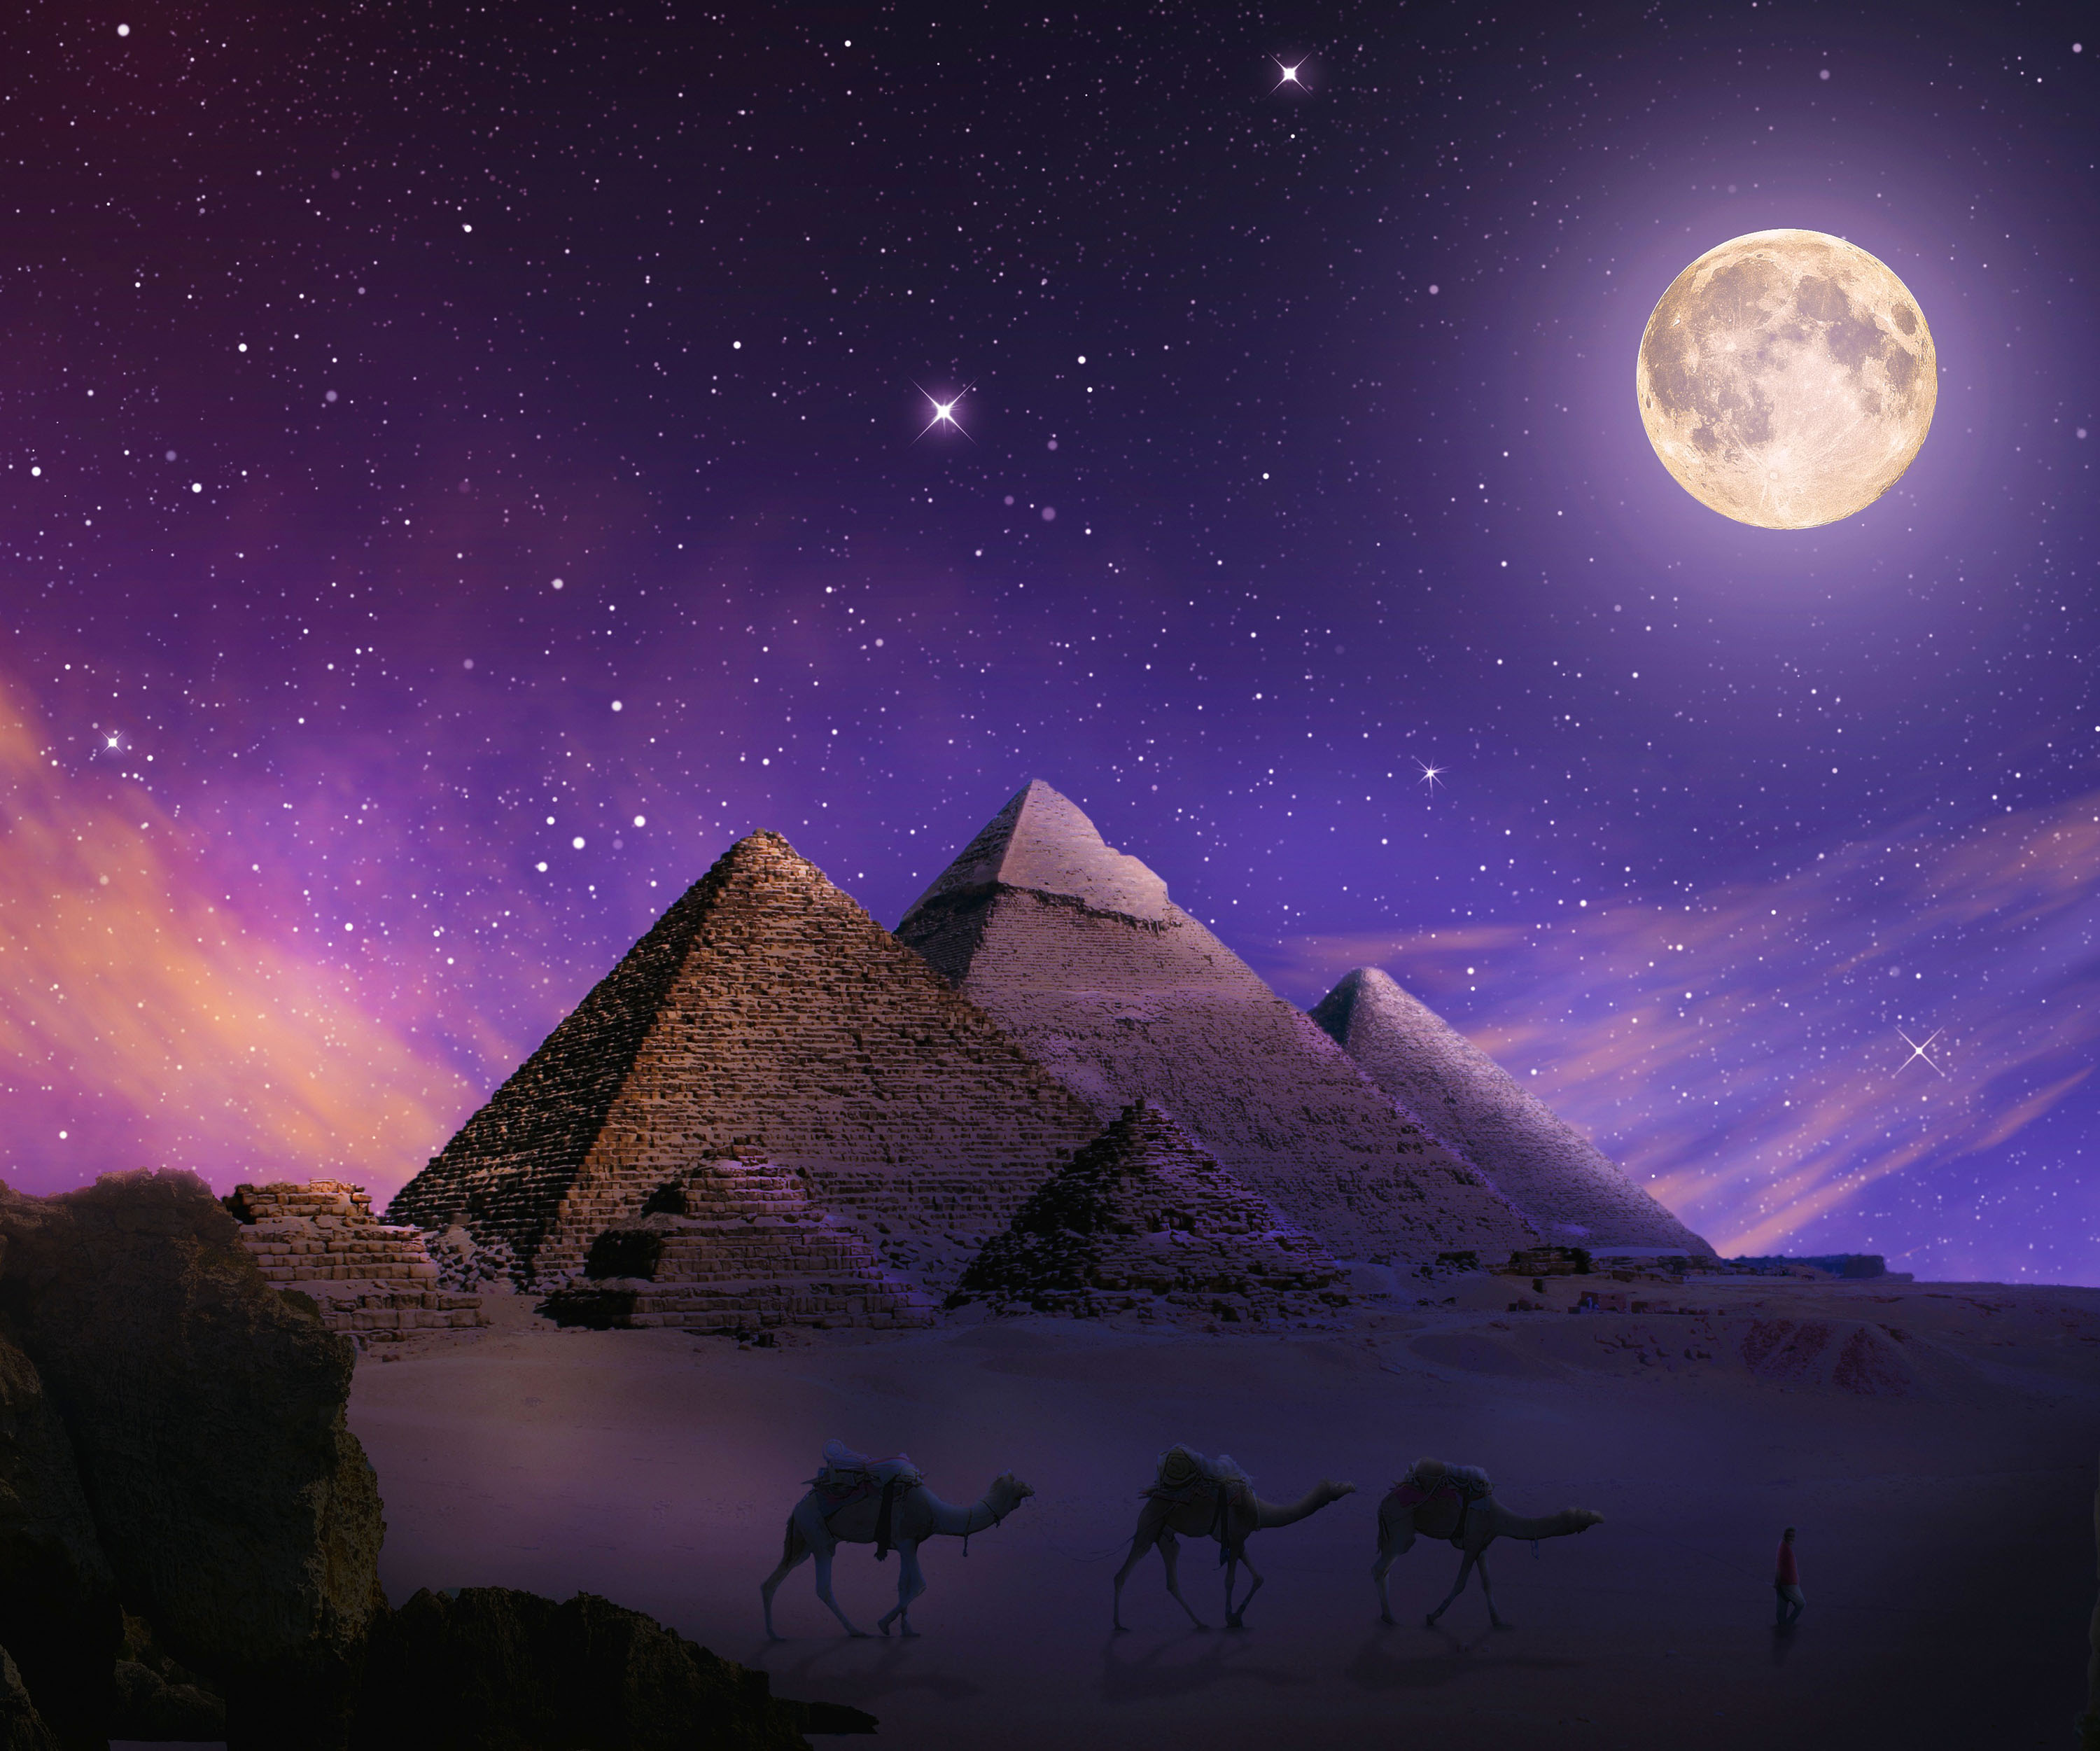 egypt, pyramid, man made, camel Free Stock Photo